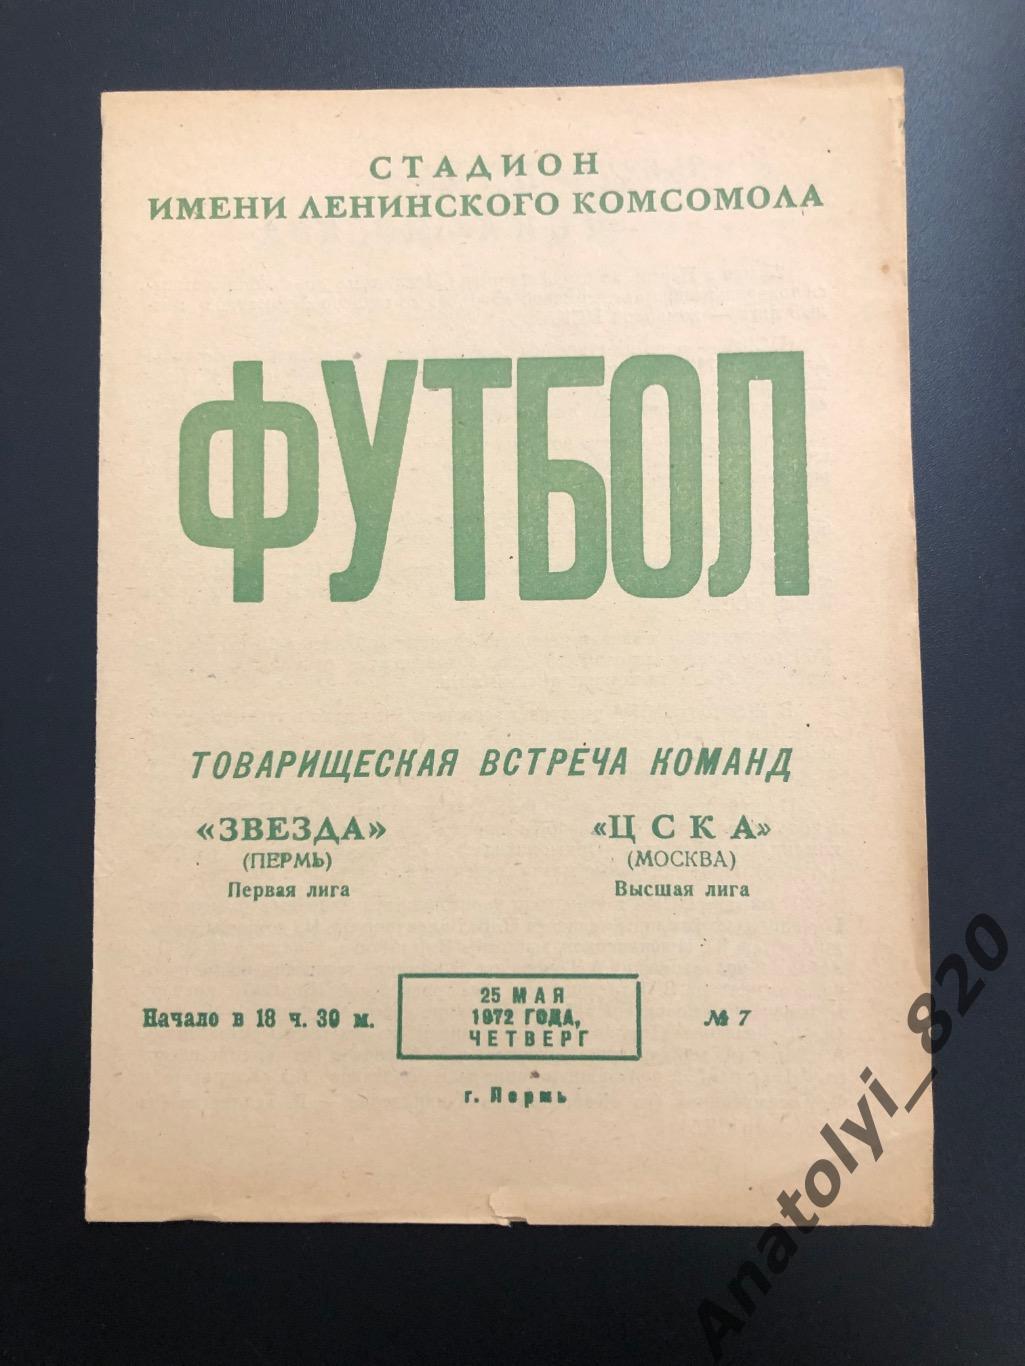 Звезда Пермь - ЦСКА Москва, 25.05.1972, товарищеский матч